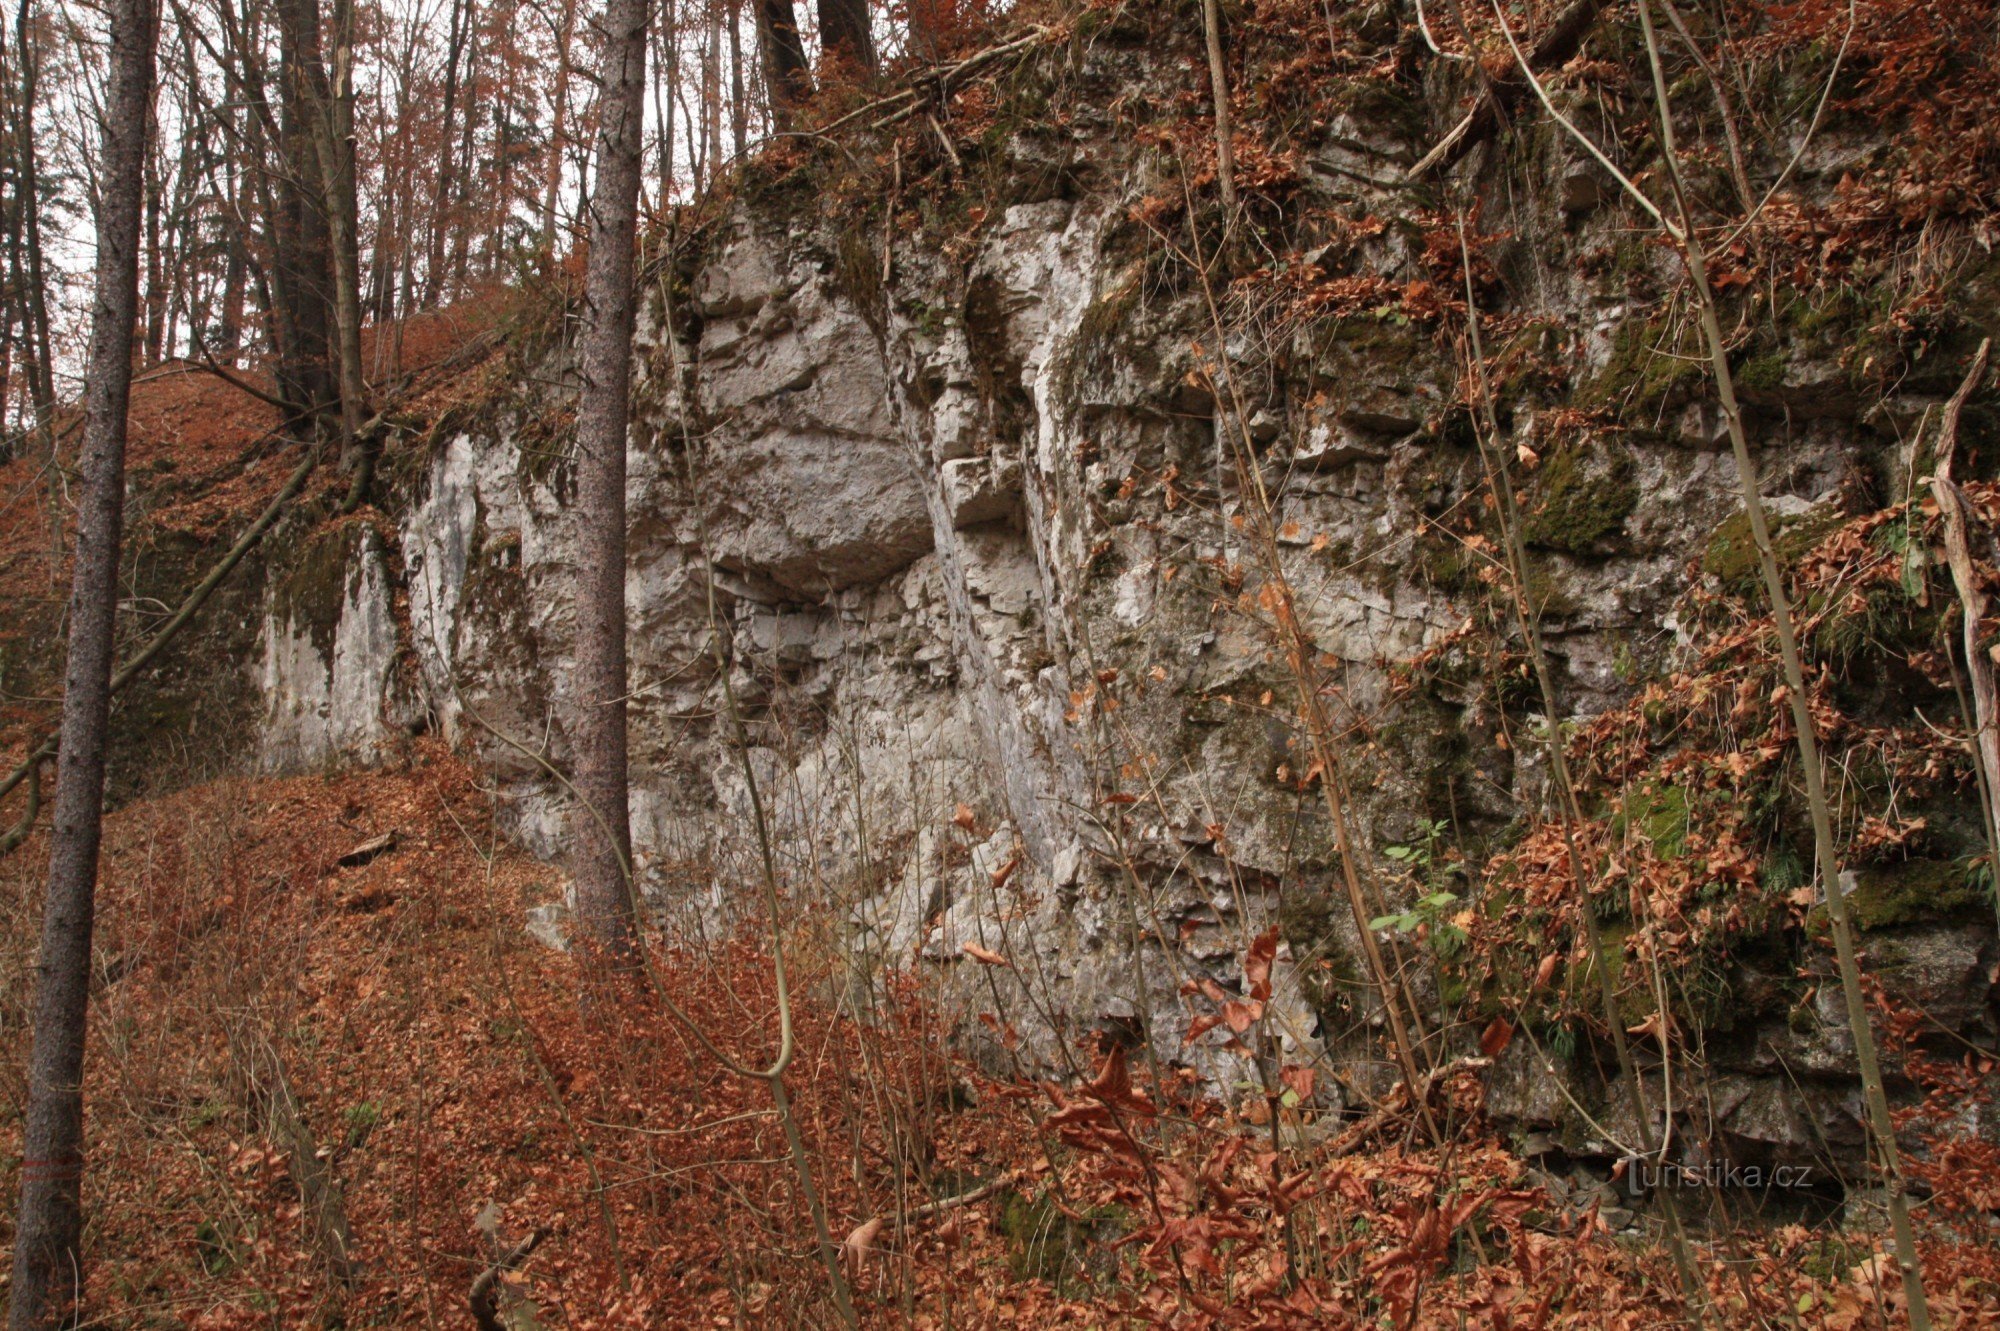 Βράχοι στο Vaječník, στο πάνω μέρος η είσοδος στο σπήλαιο στο Vaječník